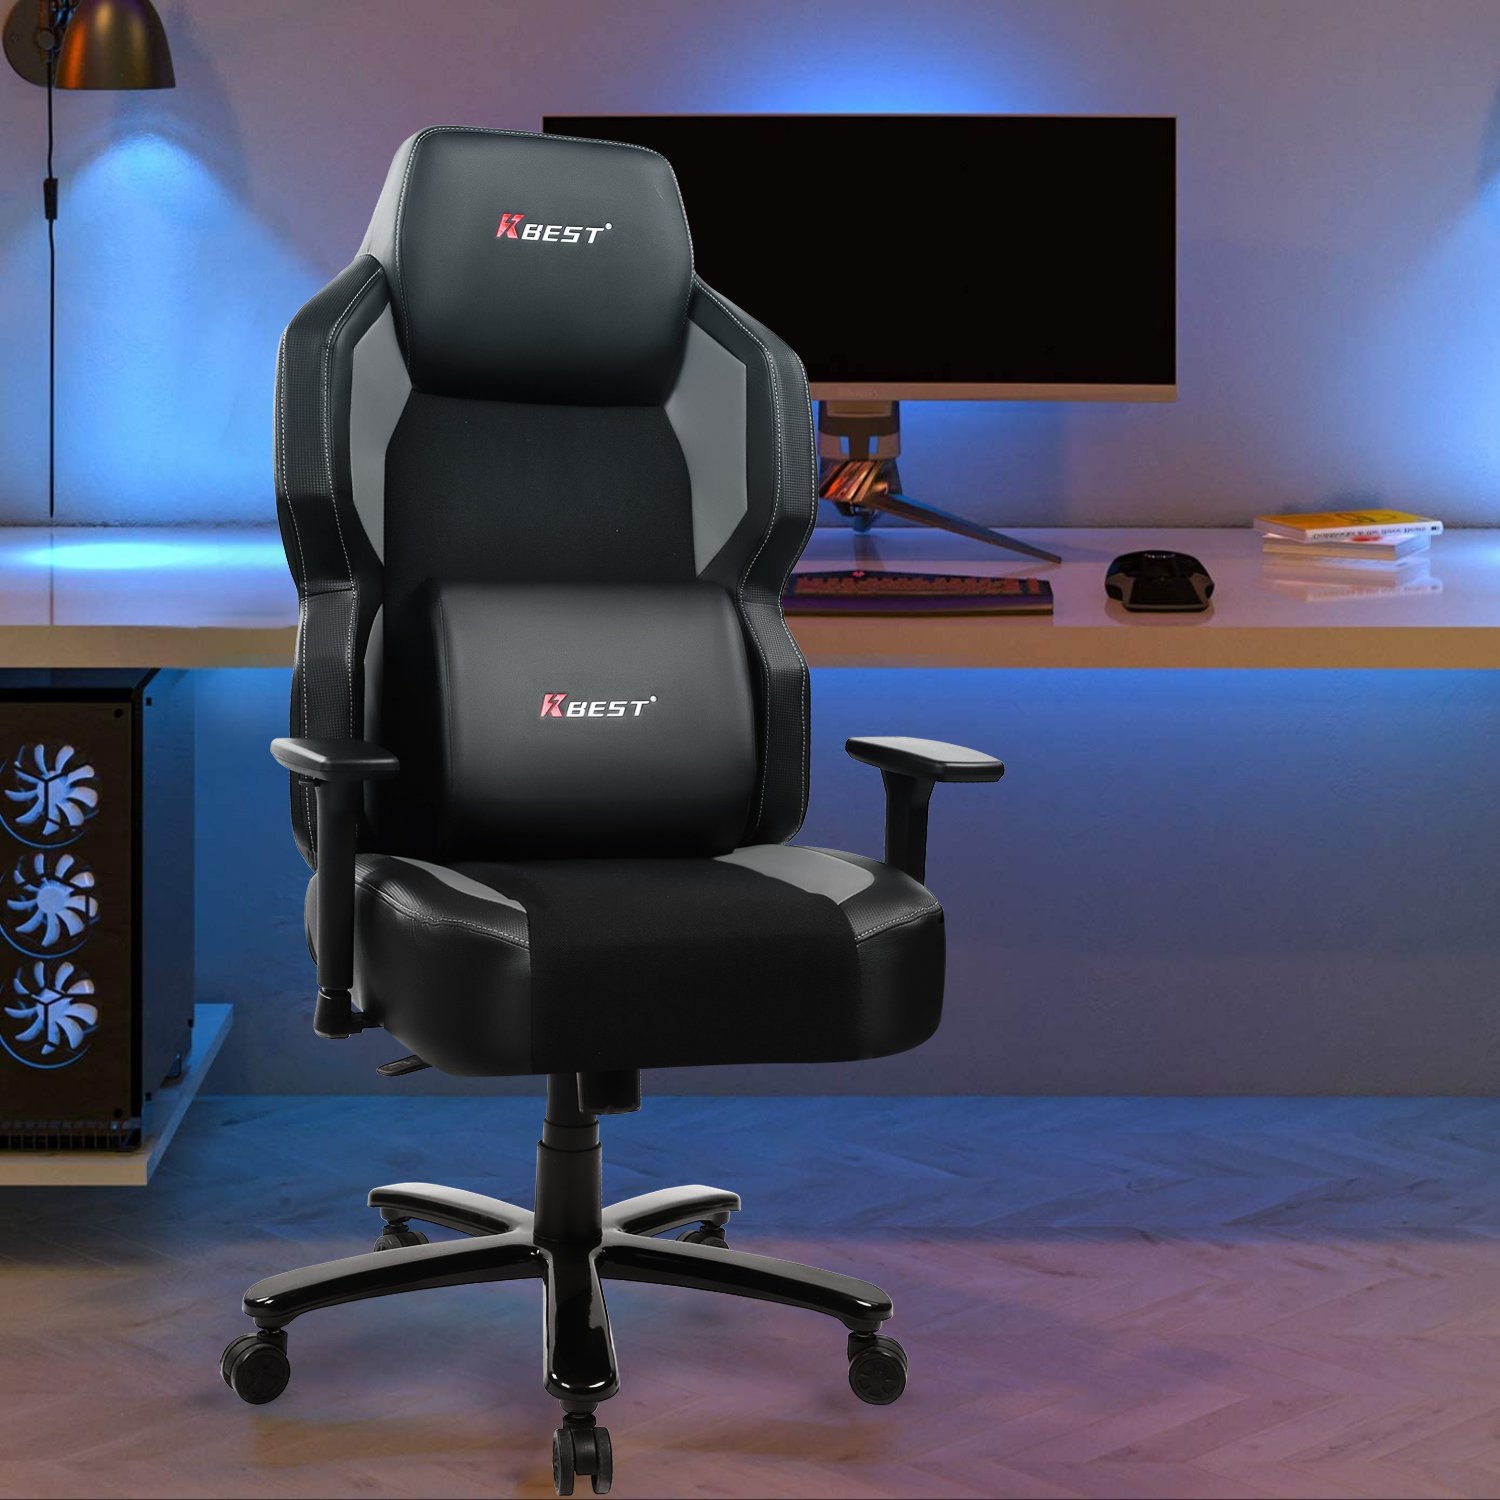 桜の花びら(厚みあり) Gaming Chair with Footrest Computer Gamer Chair Racing Style  Ergonomic Chair Height Adjustable Office Chair Reclining Video Game Chair  with Lumbar Su